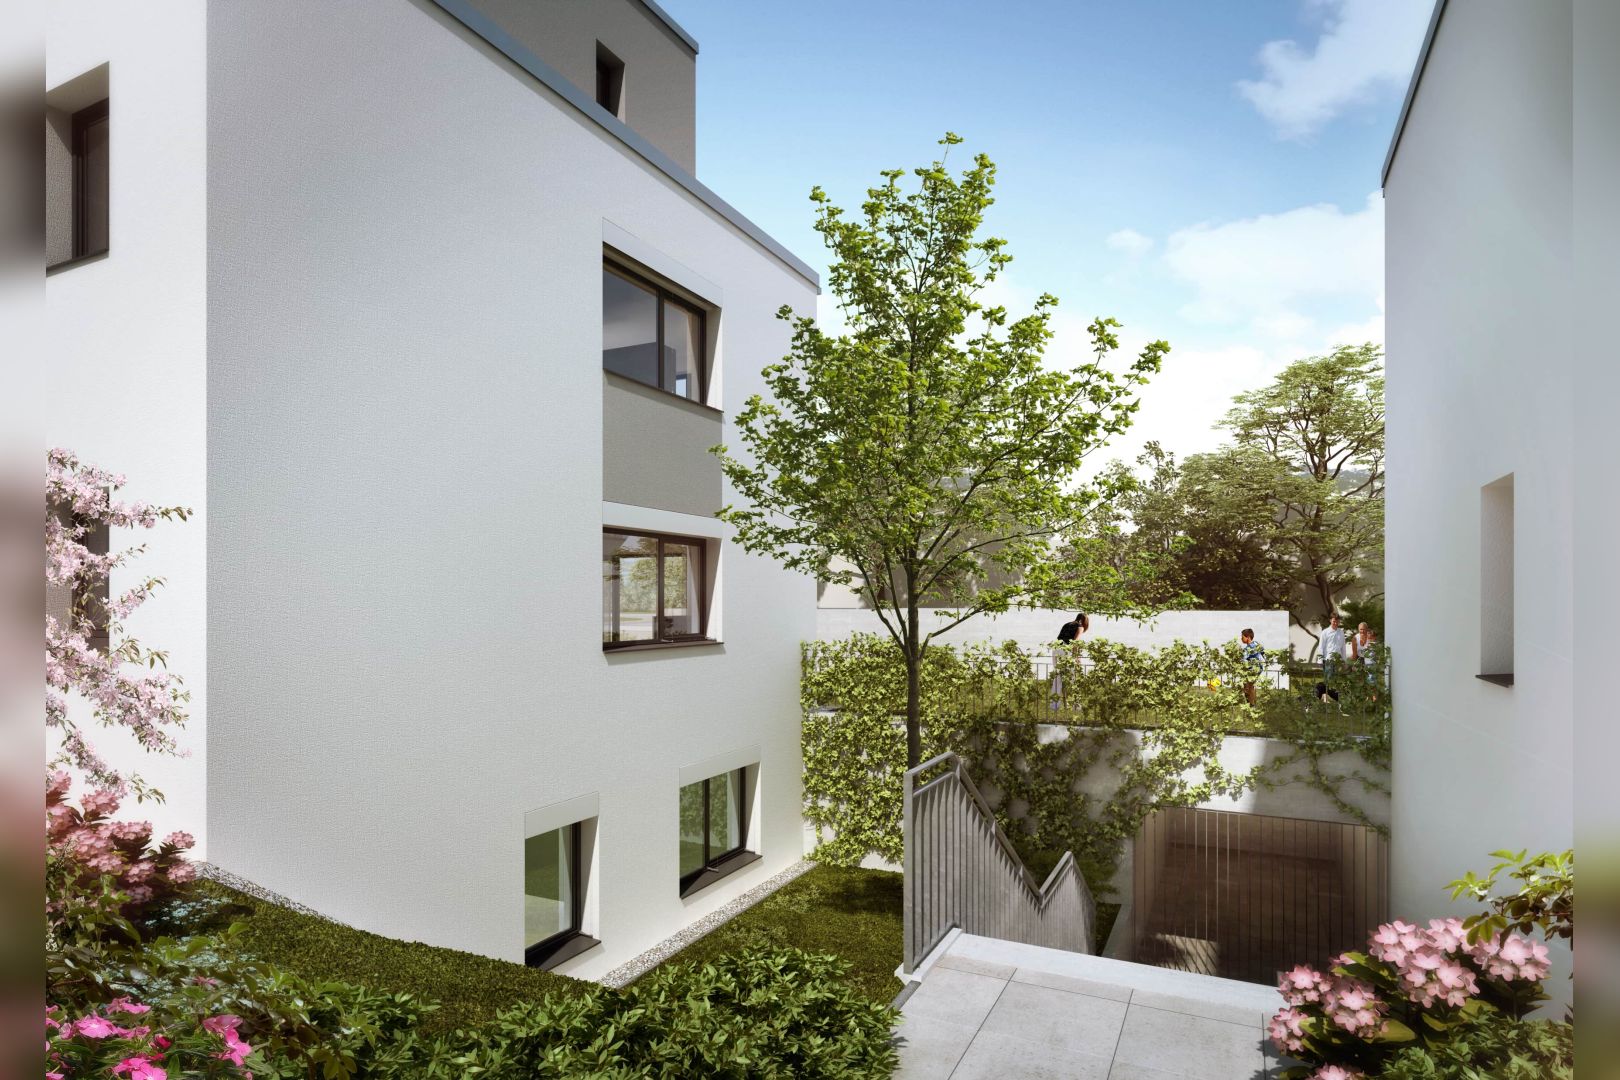 Immobilie Nr.BÖ-01.2 - BÖ-01.2;  3-Raum-Wohnung über EG und Sout., Terrasse u. Garten - Bild 16.jpg